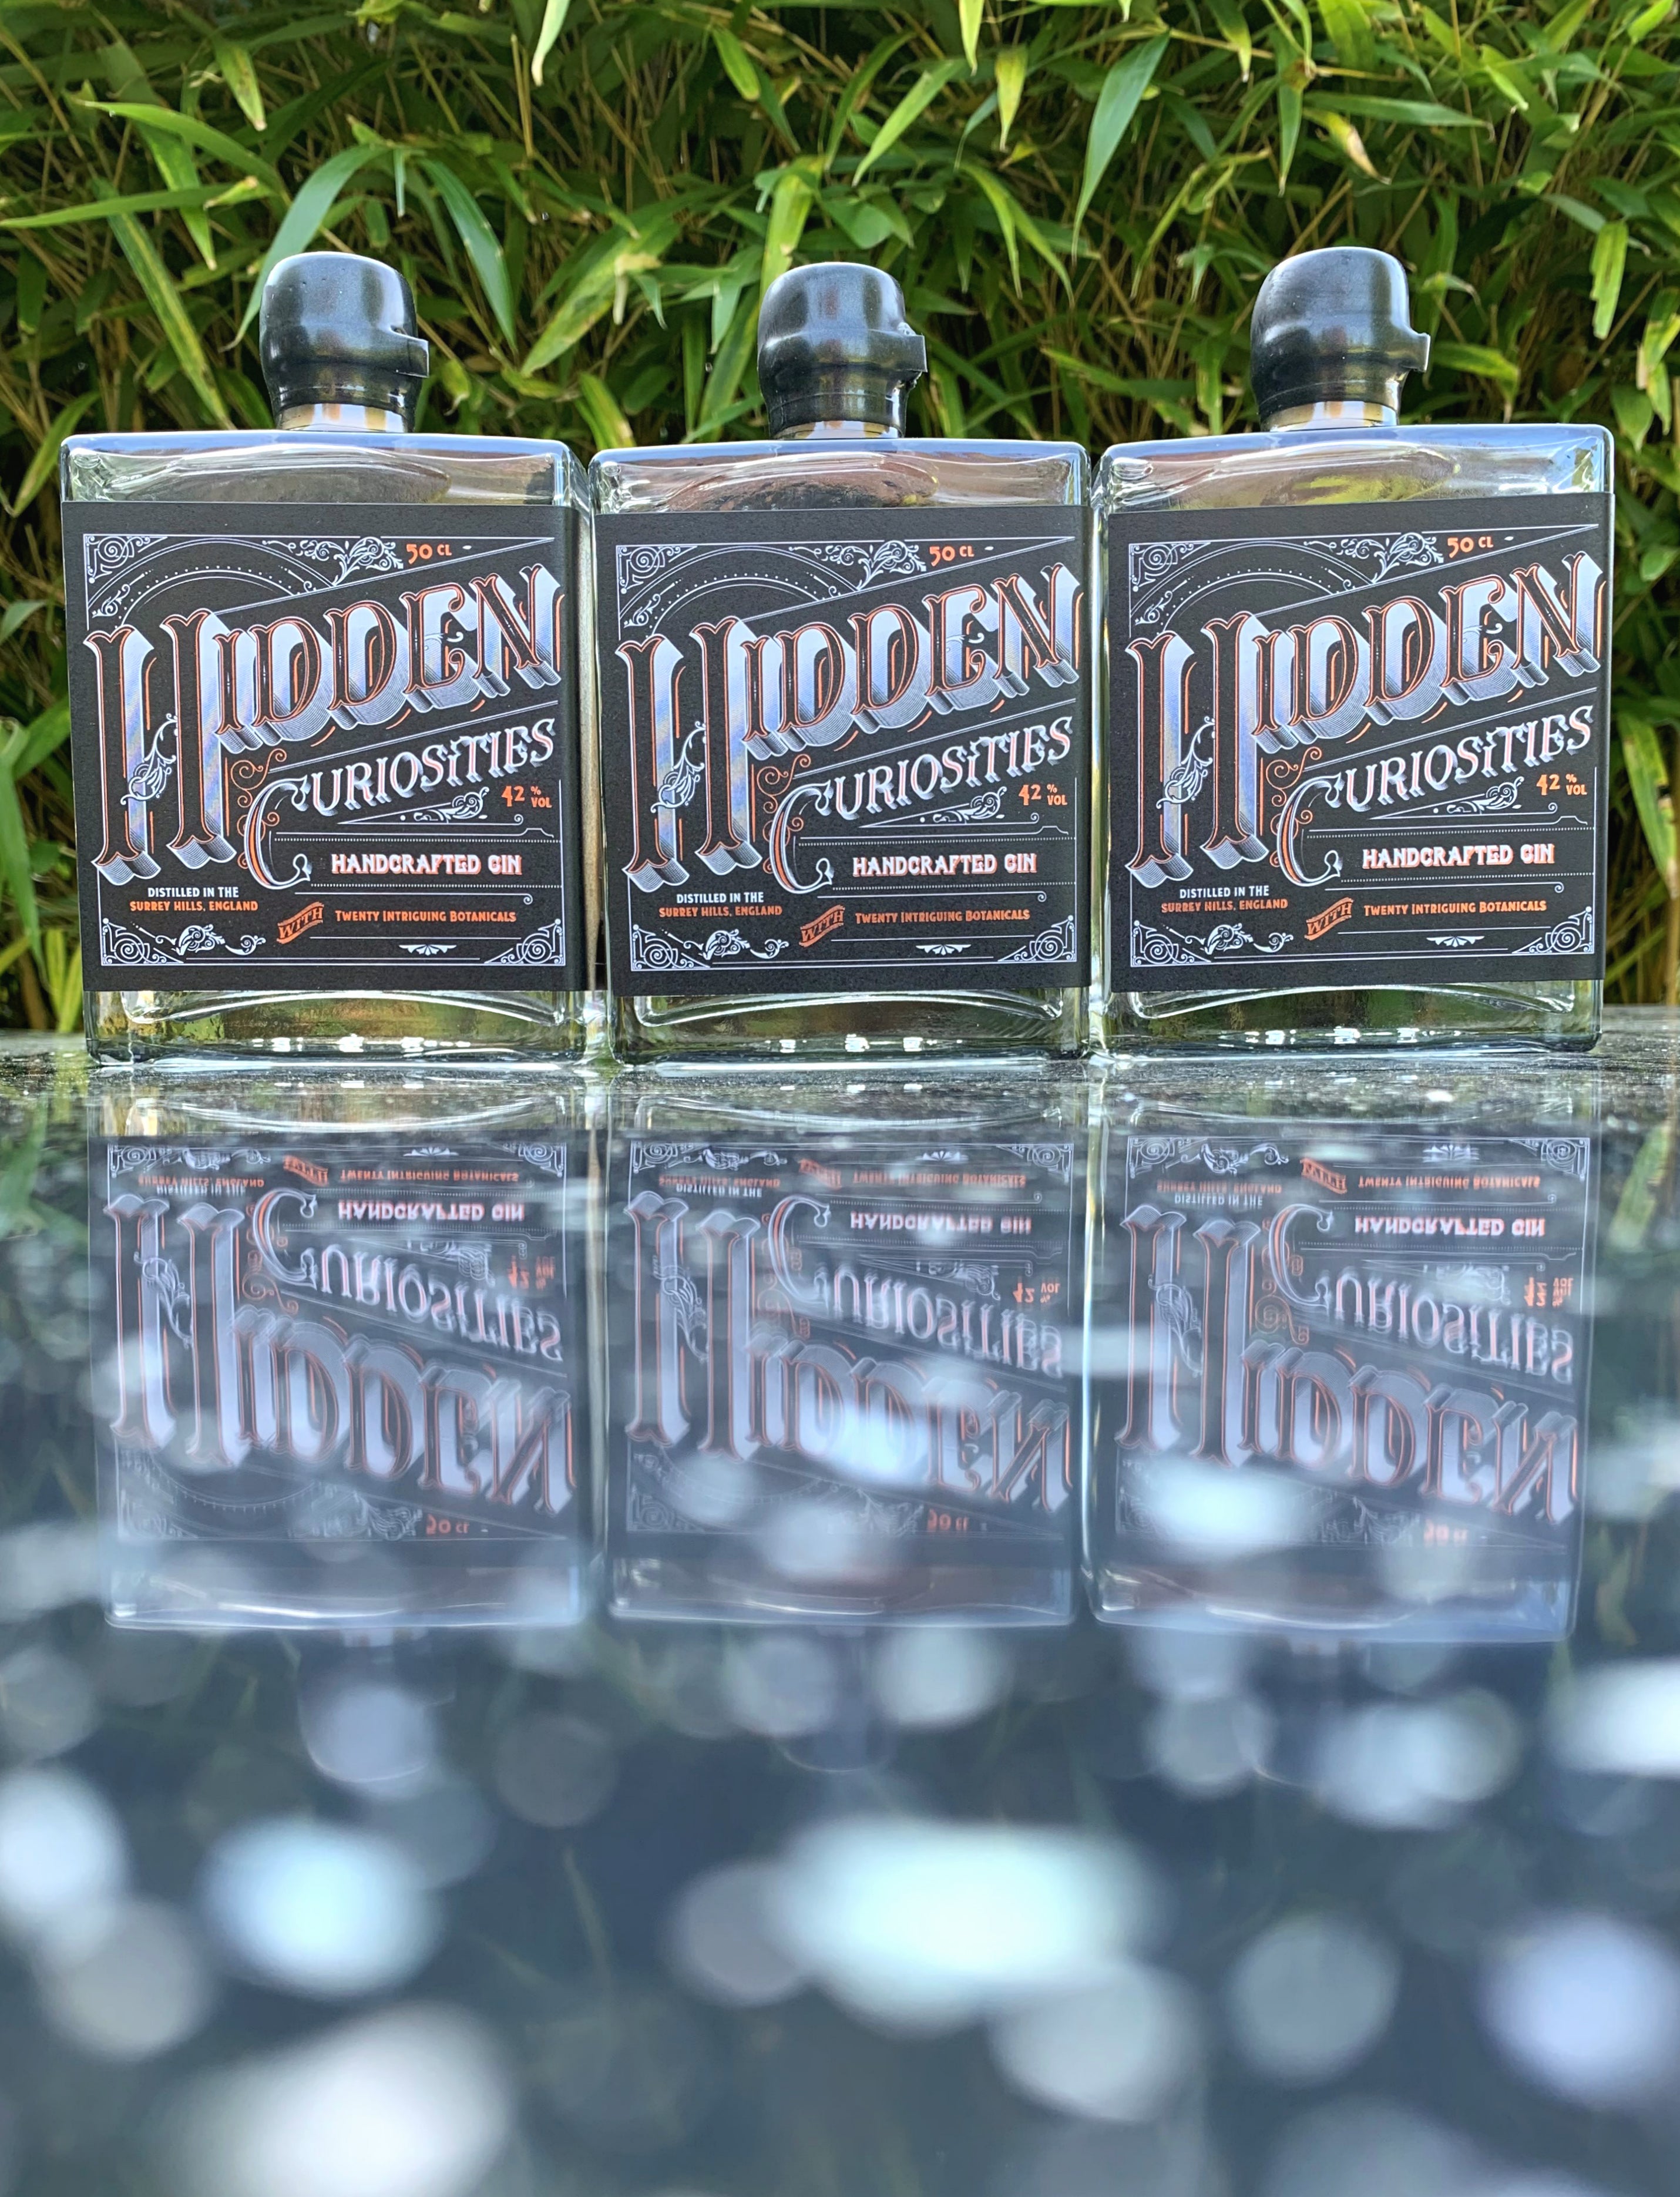 Hidden Curiosities Gin Triple Pack